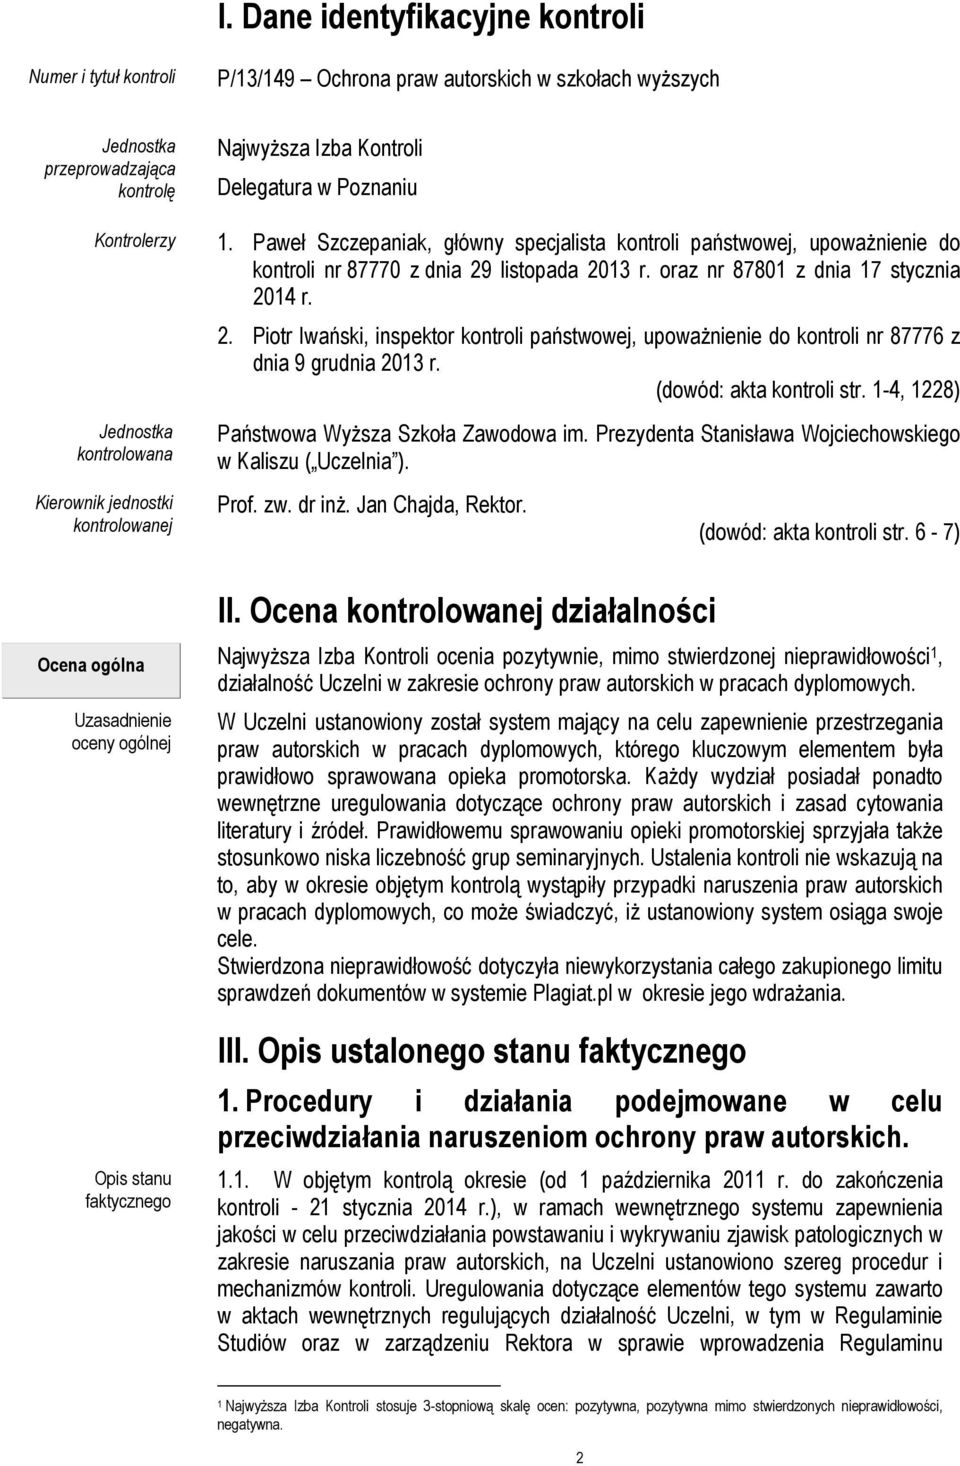 oraz nr 87801 z dnia 17 stycznia 2014 r. 2. Piotr Iwański, inspektor kontroli państwowej, upoważnienie do kontroli nr 87776 z dnia 9 grudnia 2013 r. (dowód: akta kontroli str.